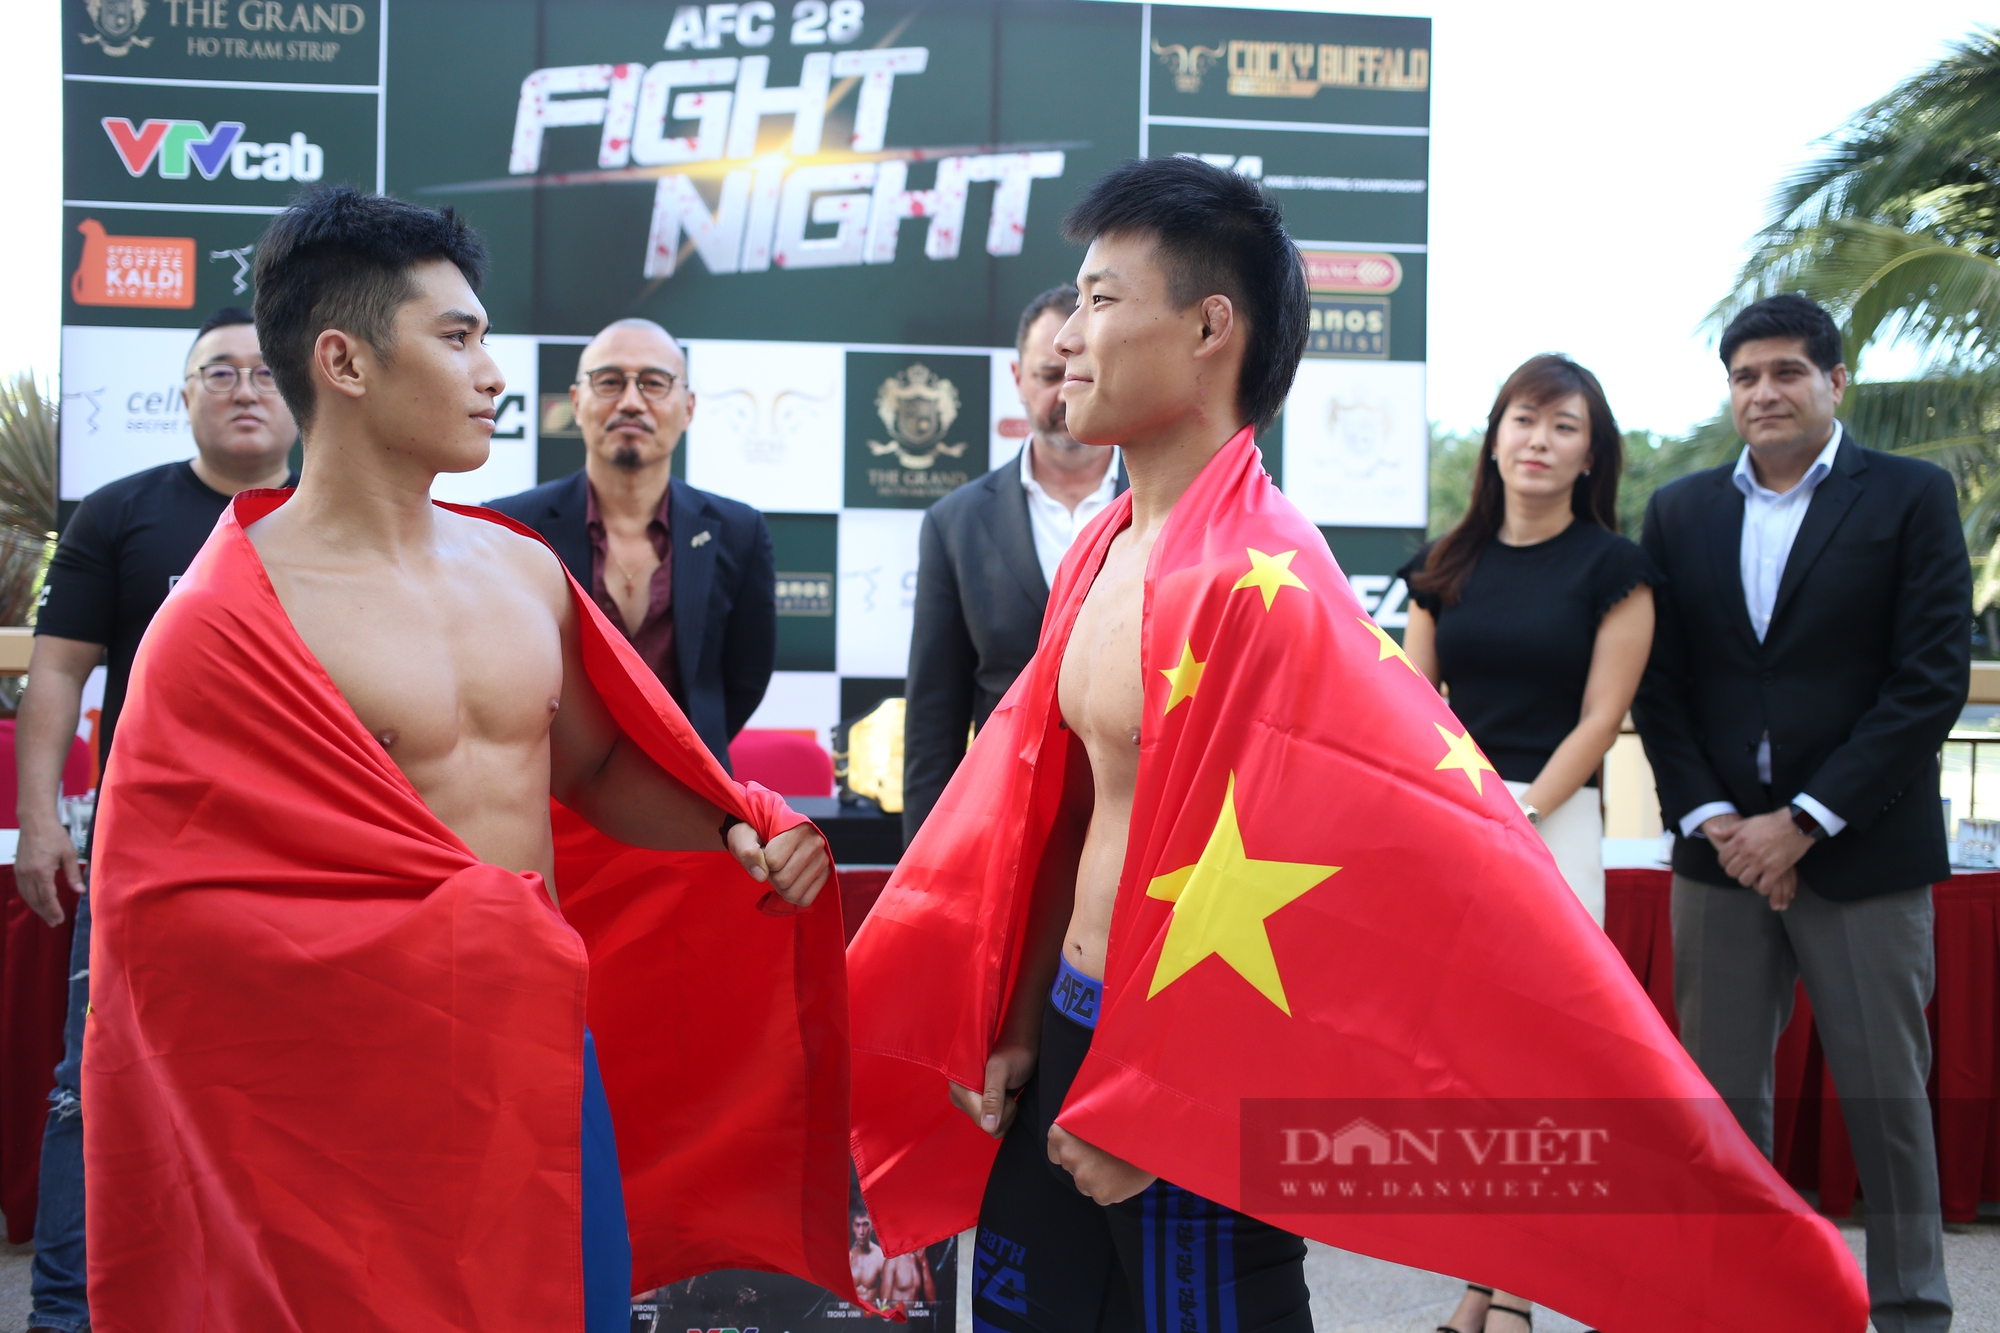 Bỏ thi đấu, Nguyễn Trần Duy Nhất muốn giúp học trò hạ các võ sĩ Trung Quốc và Hàn Quốc - Ảnh 3.